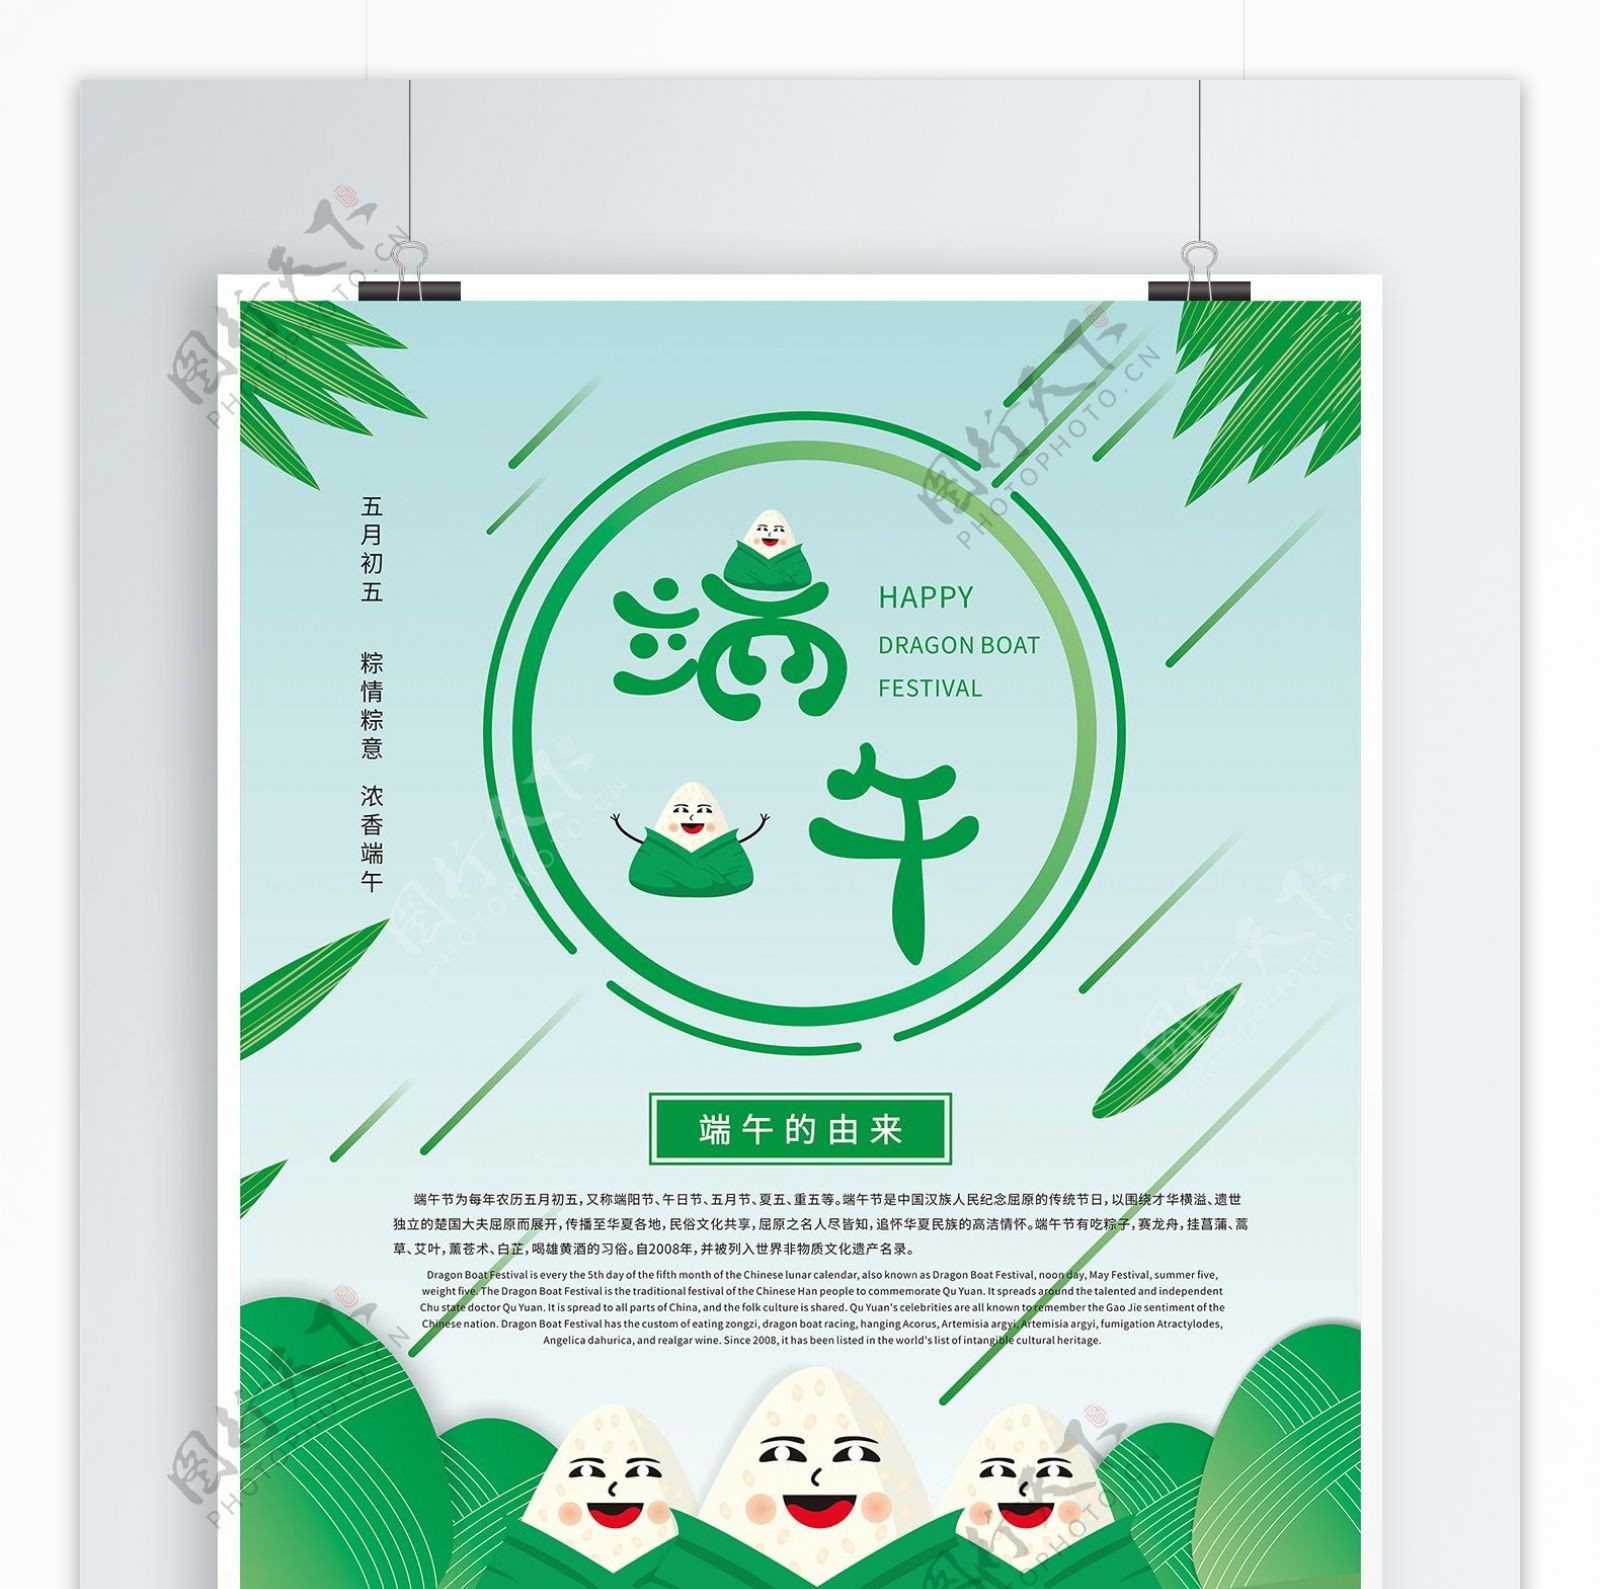 绿色清新风端午节节日海报设计